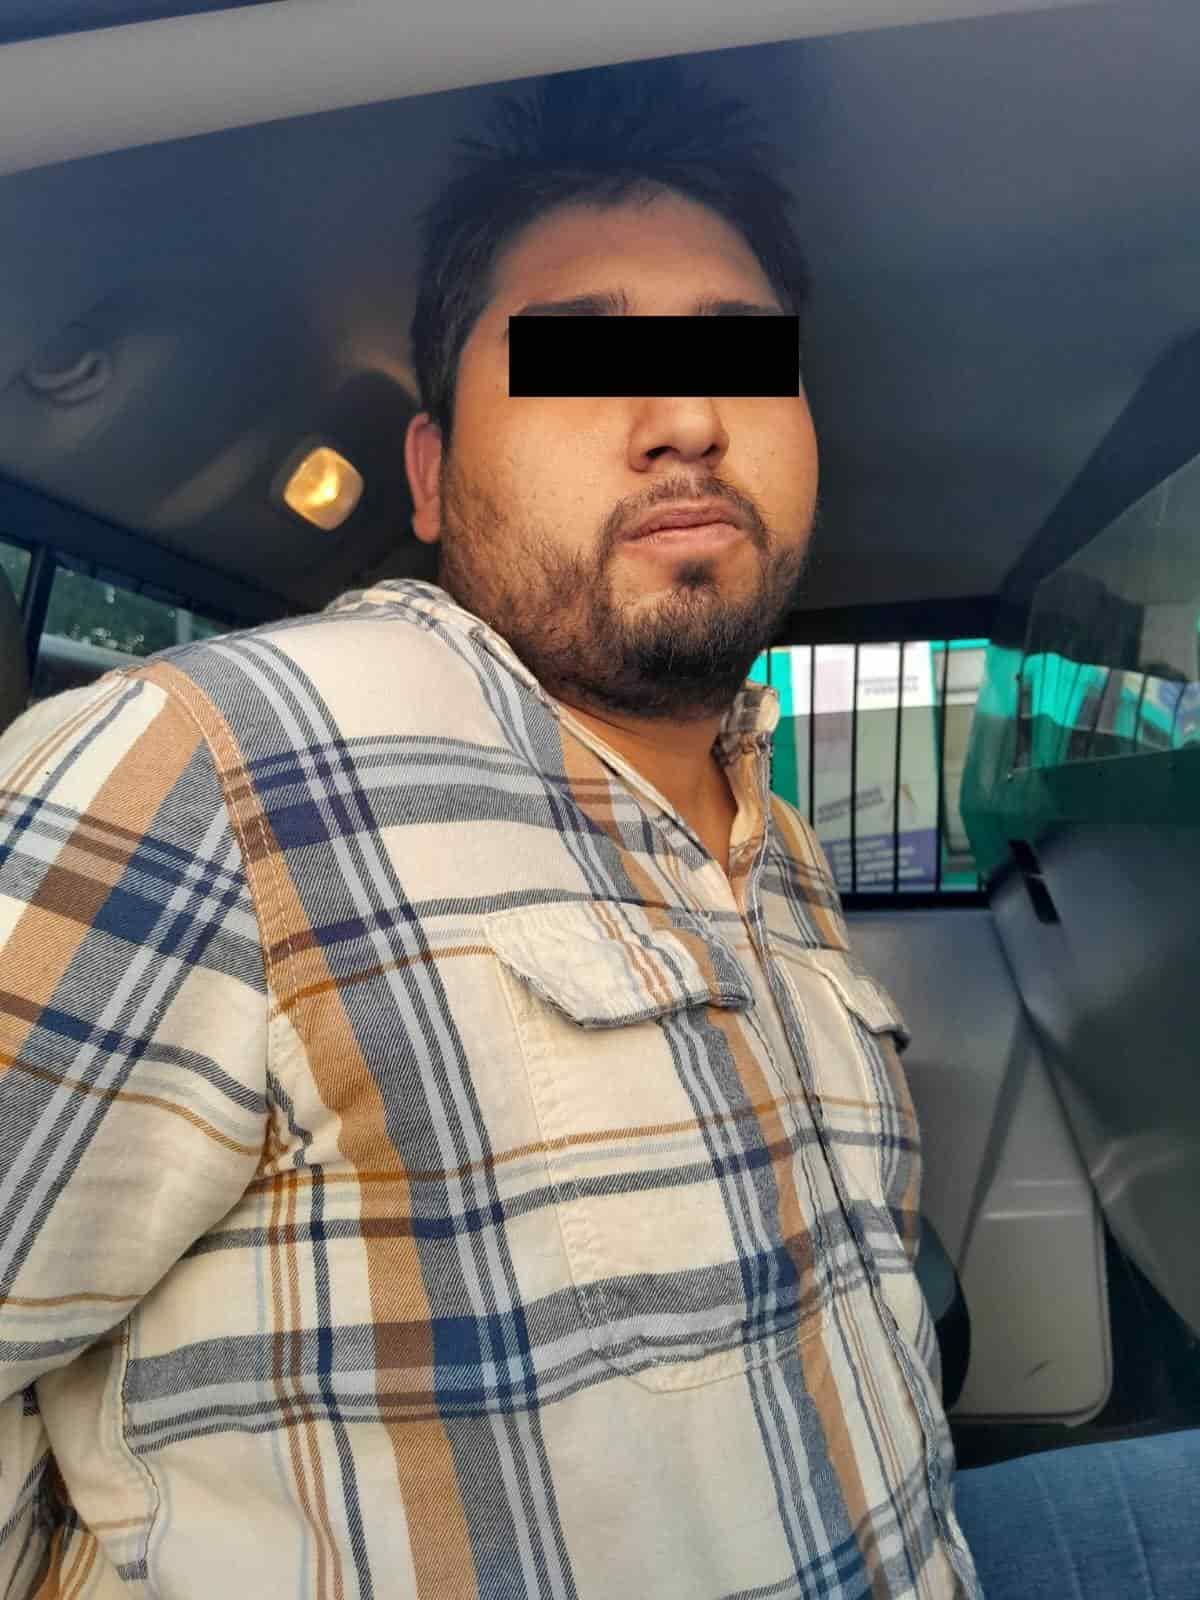 Por presuntamente privar de la libertad a un hombre, a quien esposado pretendía internarlo a un anexo, un joven fue detenido por oficiales de la Policía de Monterrey, en el centro de la ciudad.